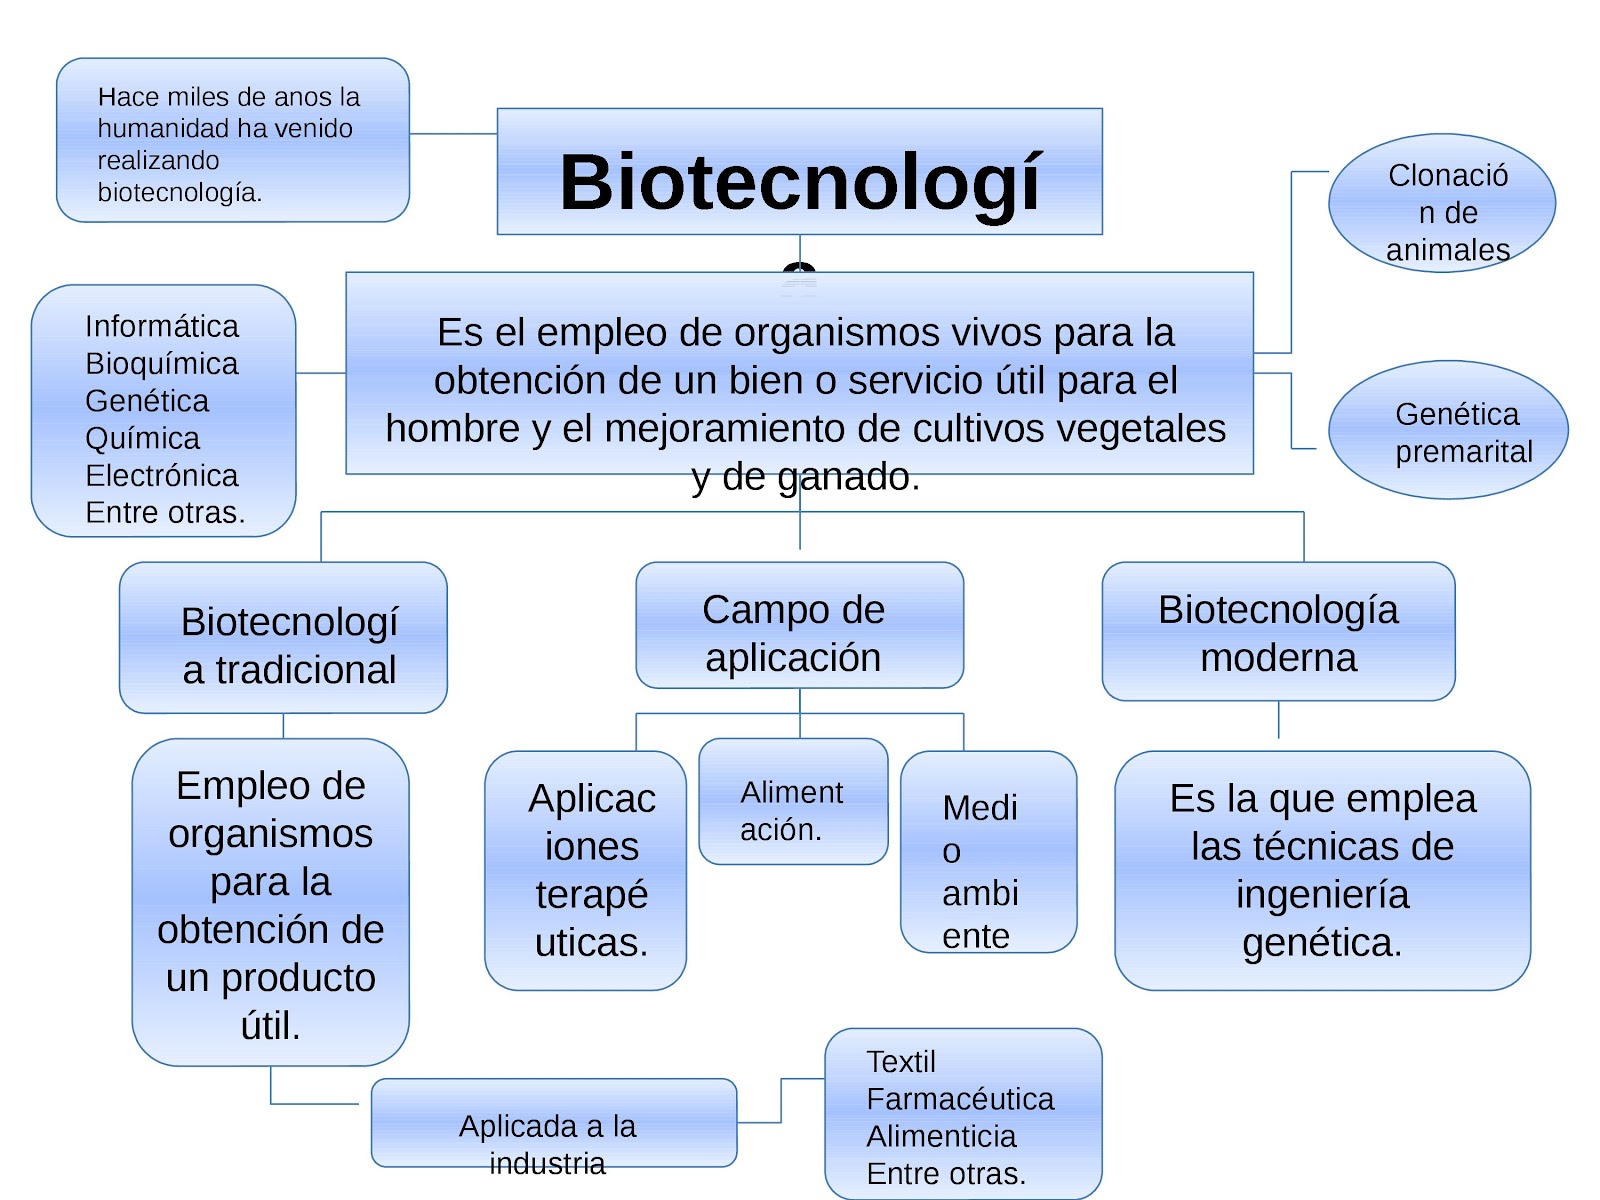 Ensayo Sobre Los Beneficios Y Consecuencias De La Biotecnologia | My ...